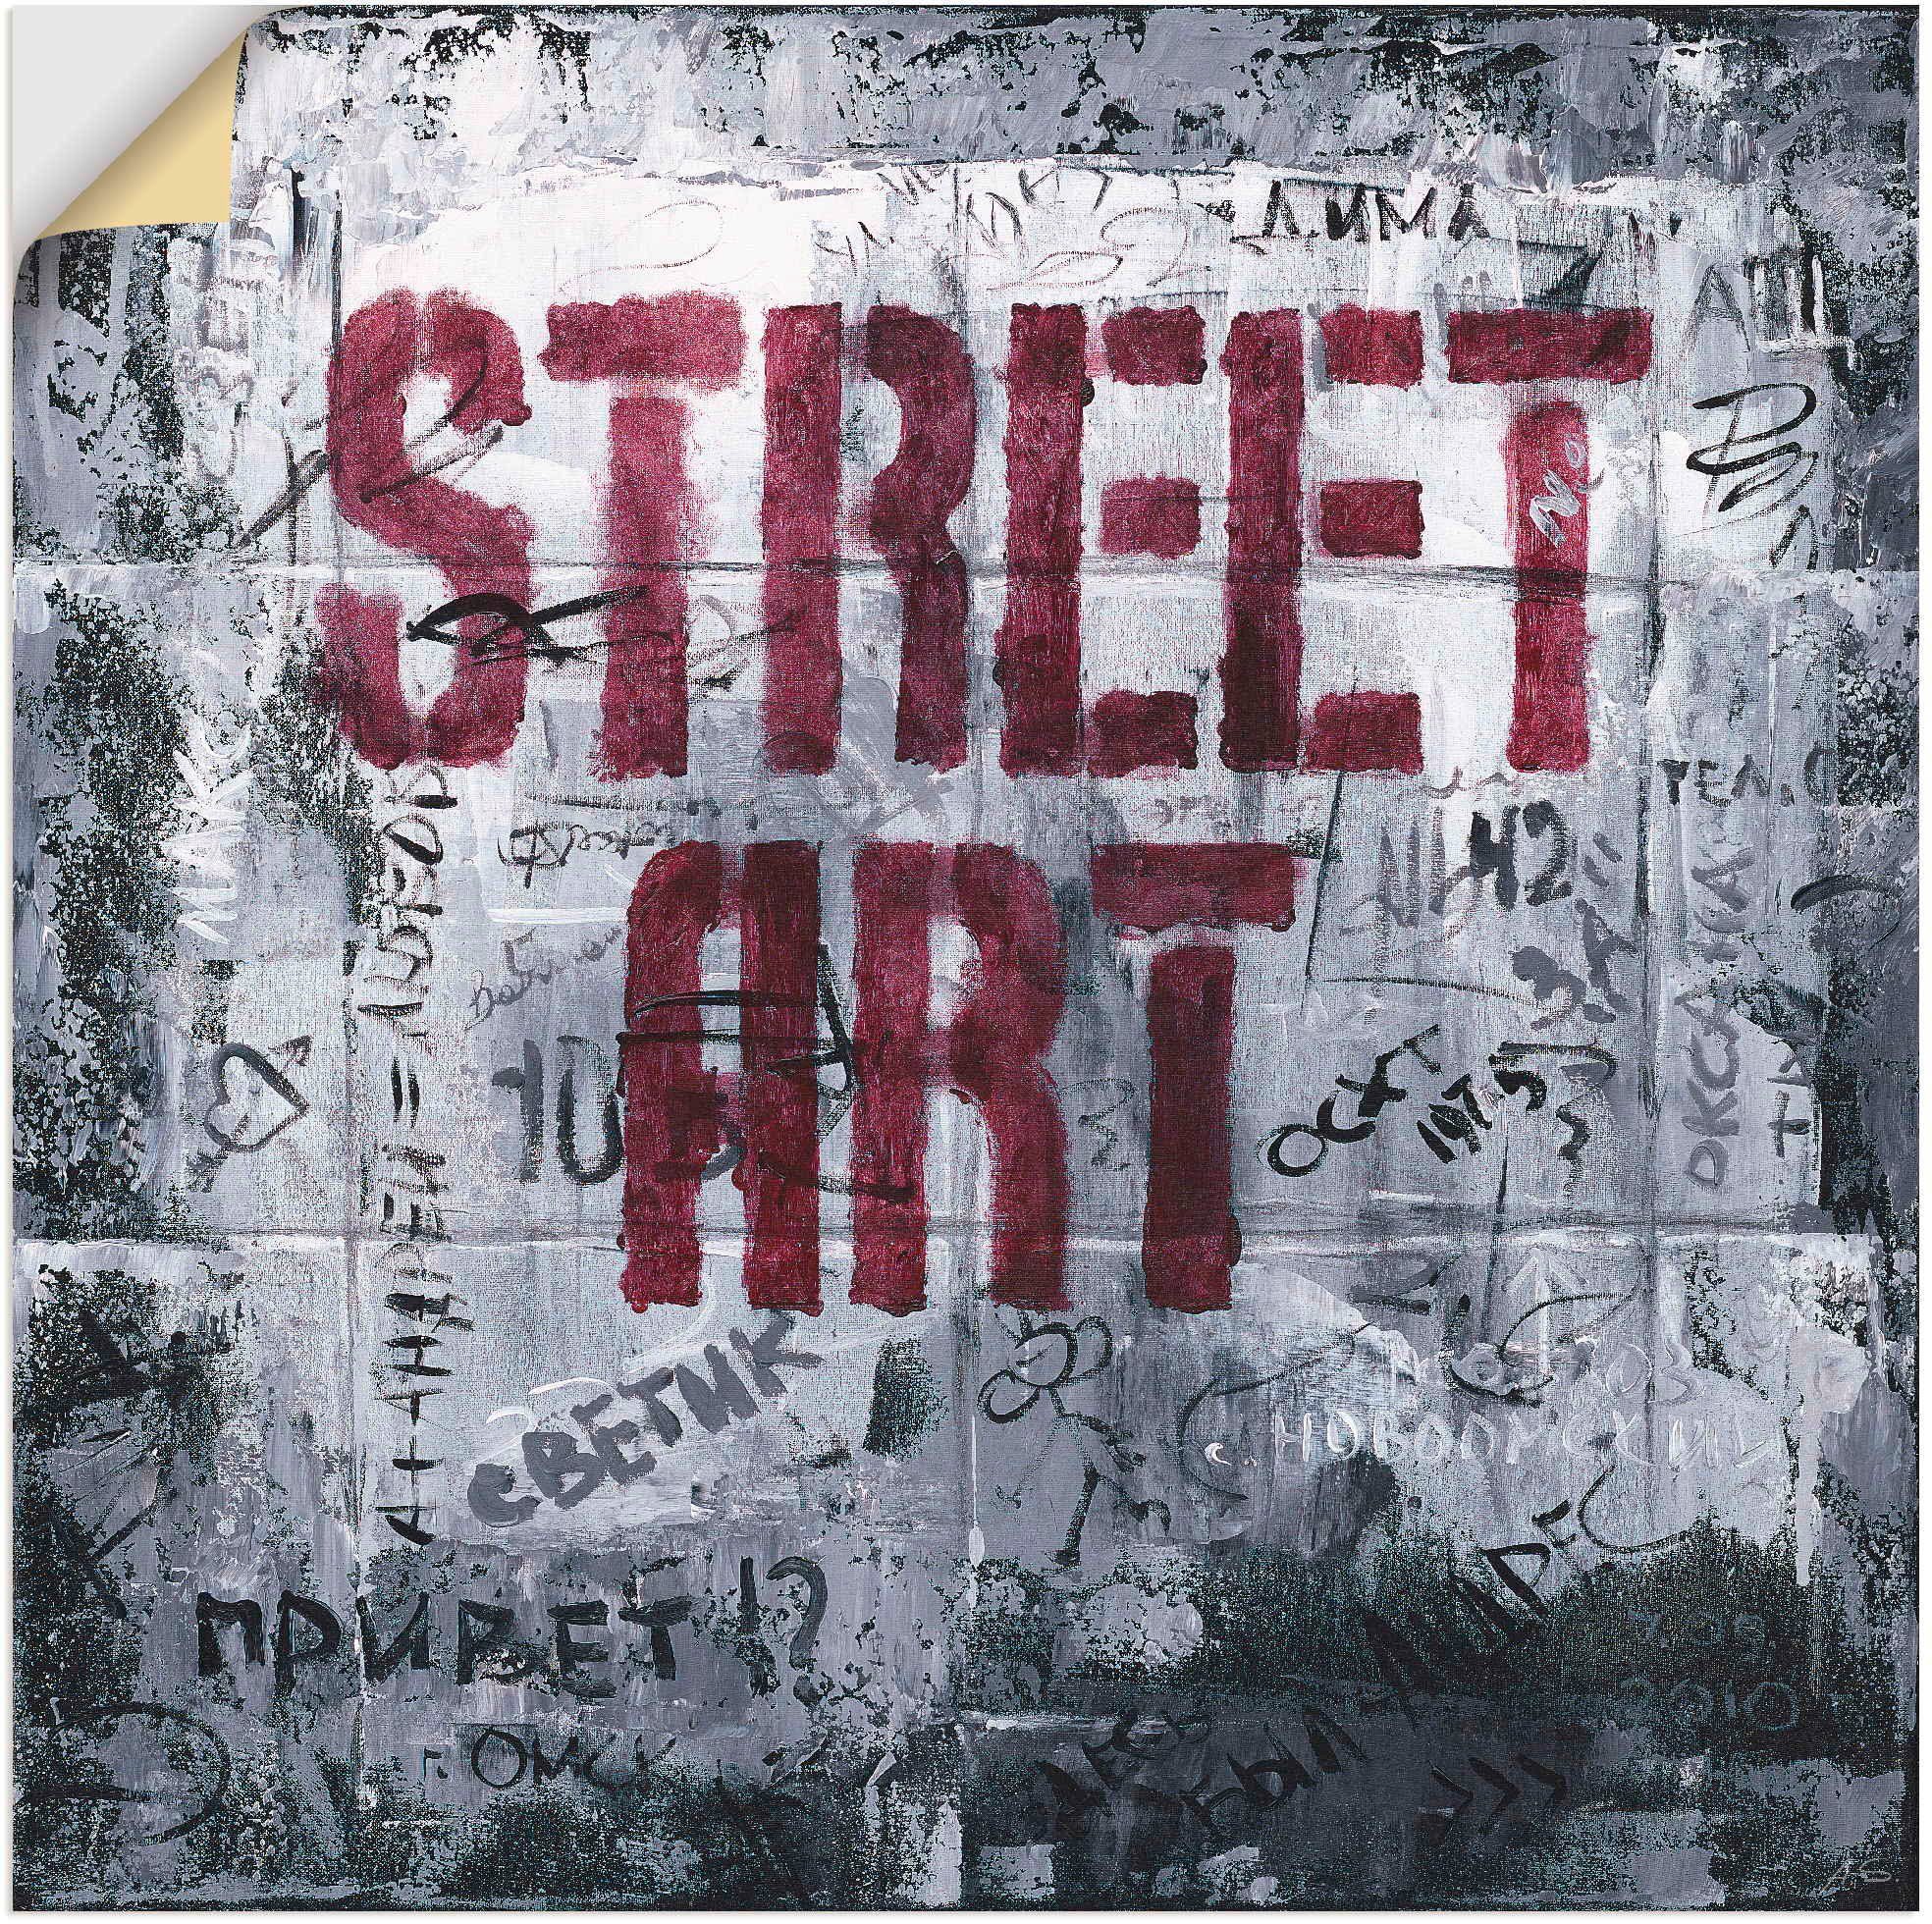 Artland Artprint Street Art - straatkunst in vele afmetingen & productsoorten - artprint van aluminium / artprint voor buiten, artprint op linnen, poster, muursticker / wandfolie o